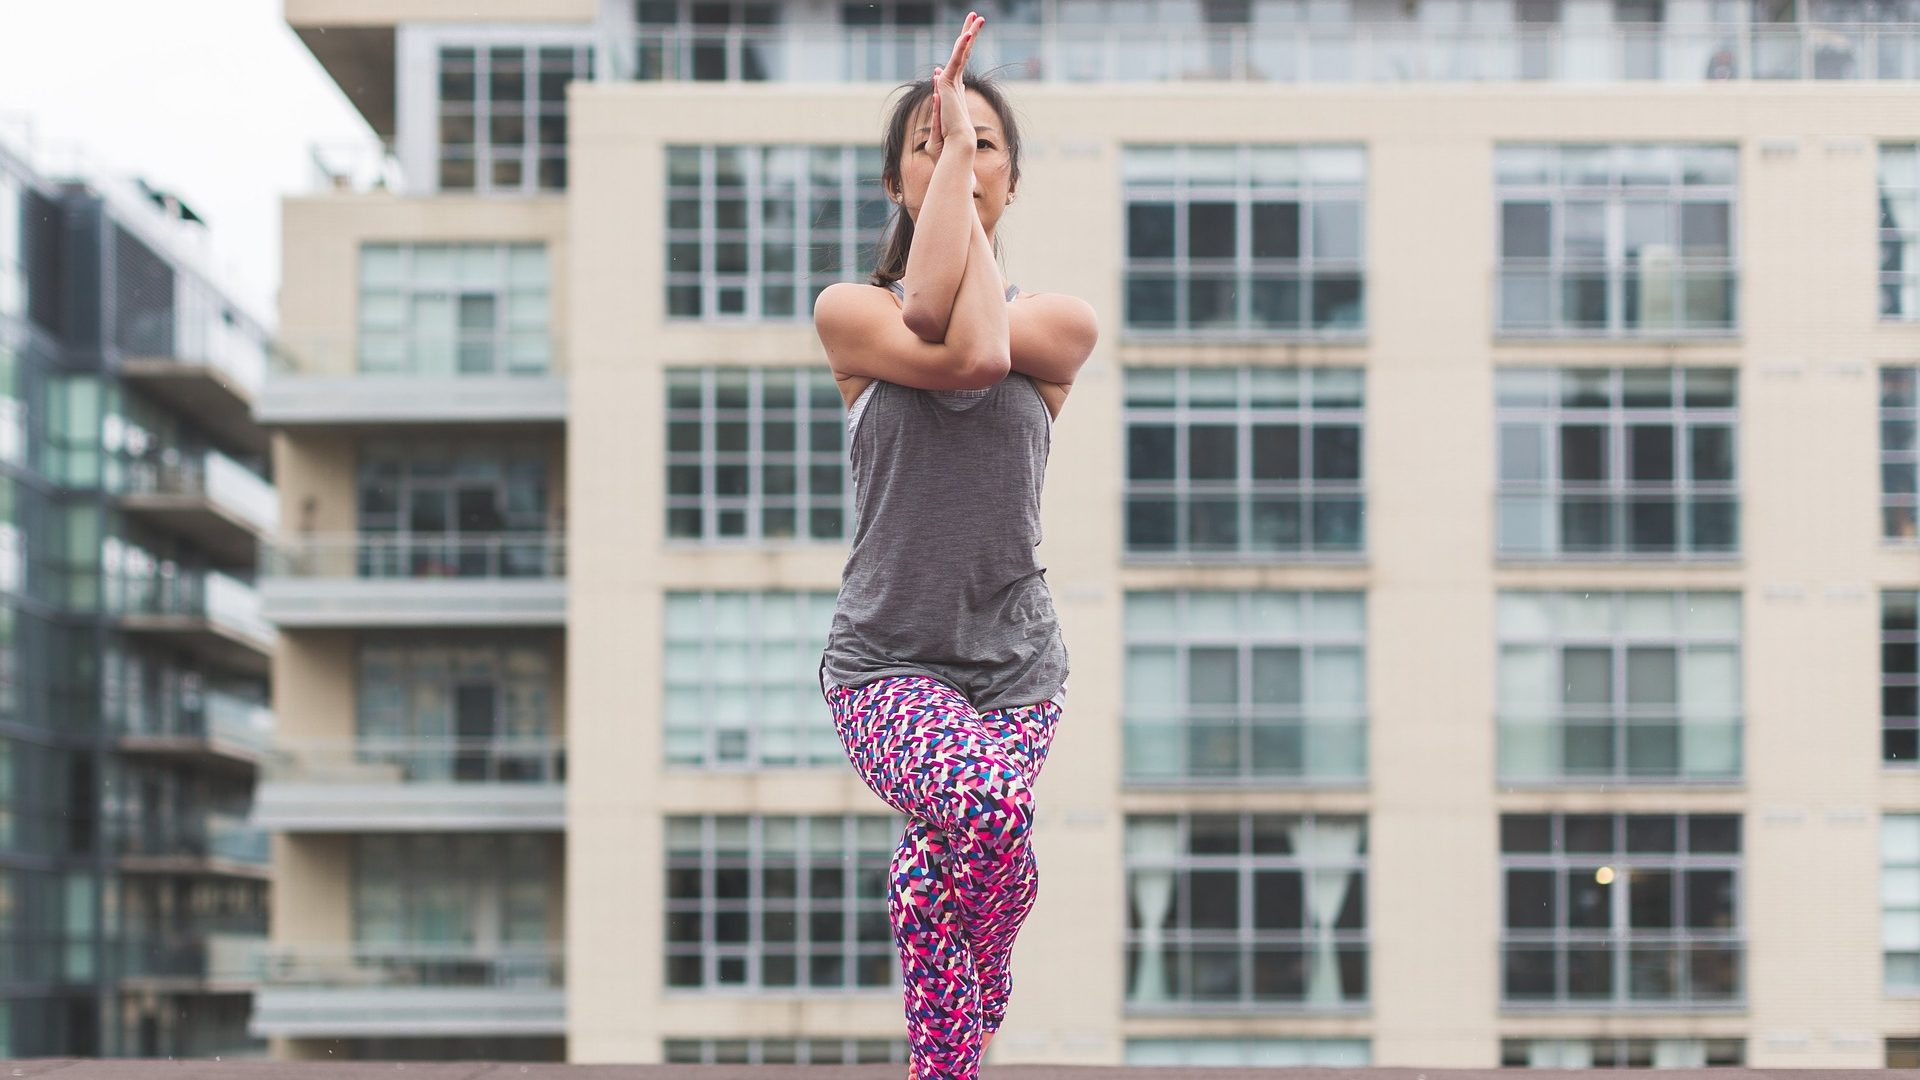 Yoga outdoor in città, la nuova tendenza che arriva dagli Stati Uniti